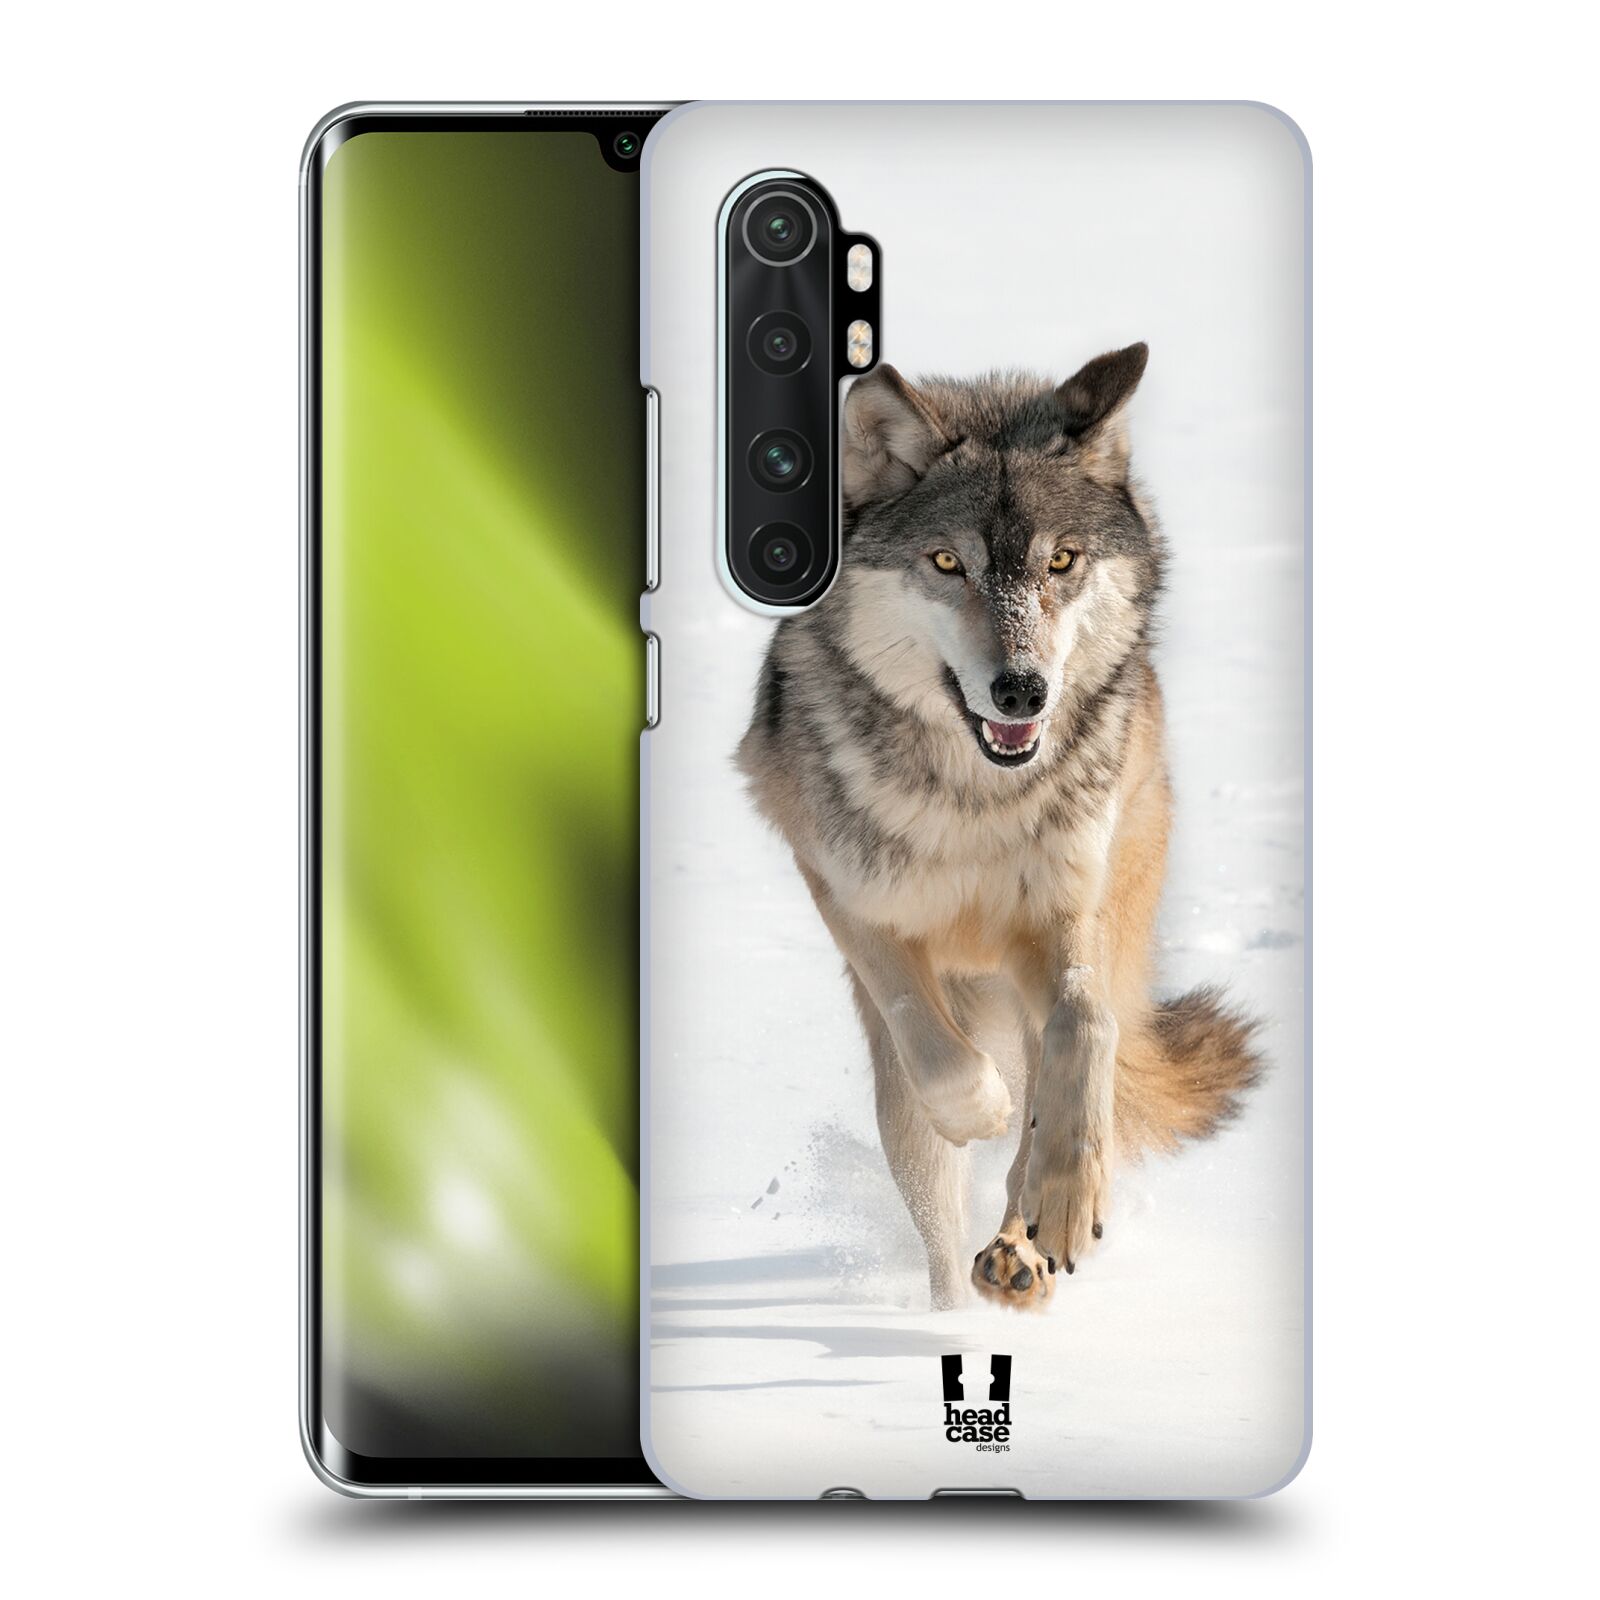 Zadní obal pro mobil Xiaomi Mi Note 10 LITE - HEAD CASE - Svět zvířat divoký vlk